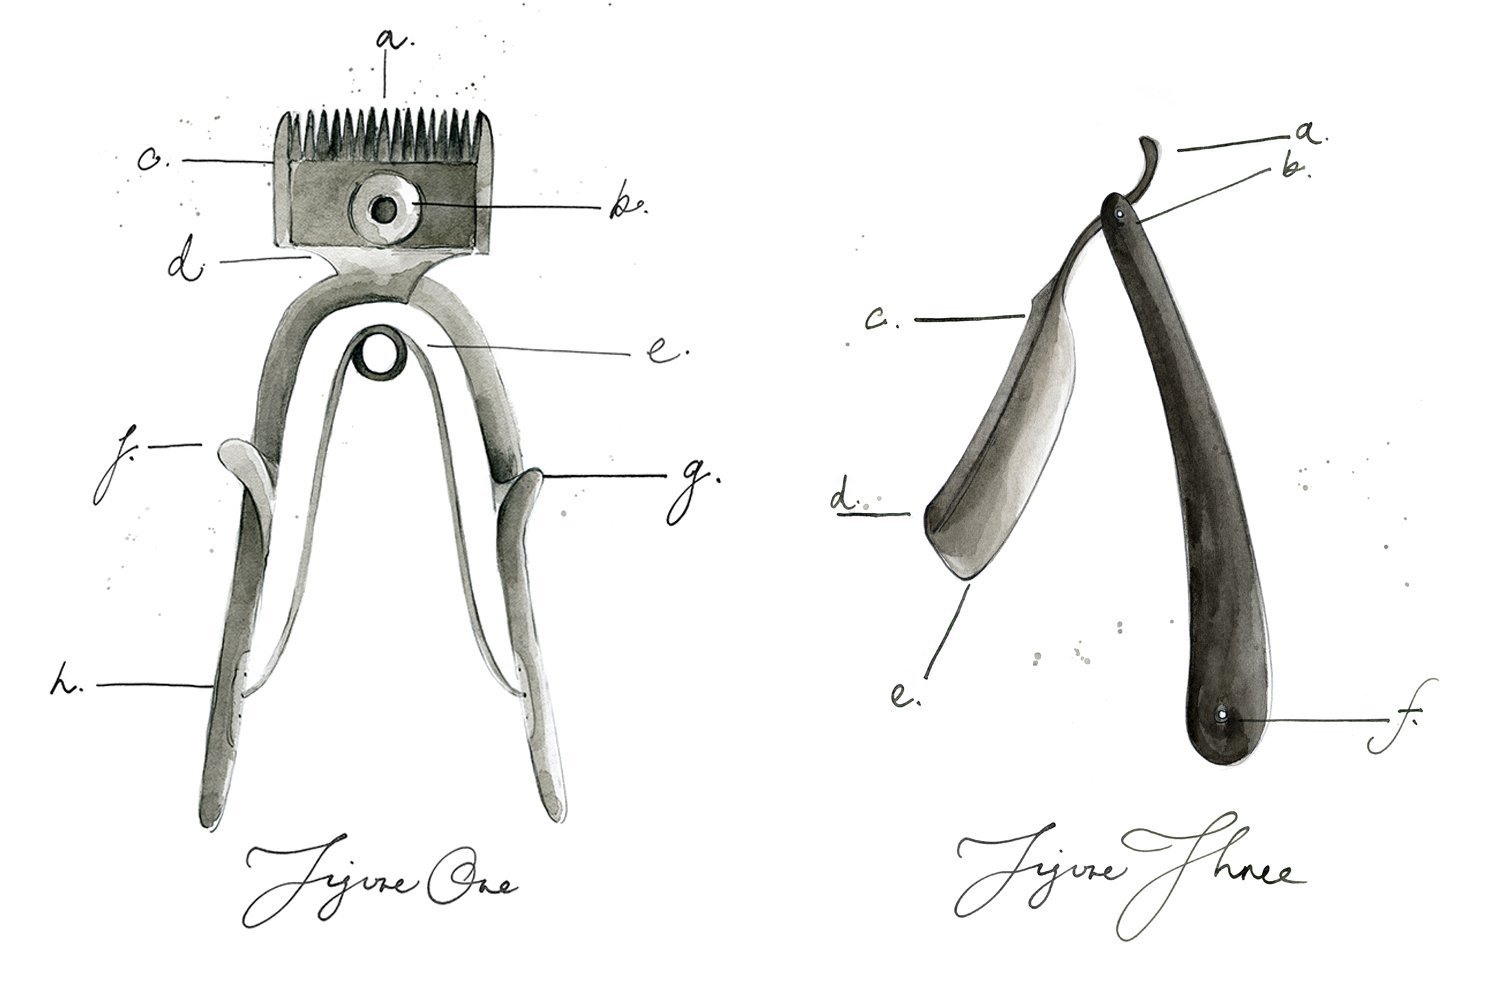 Vintage barbershop implements